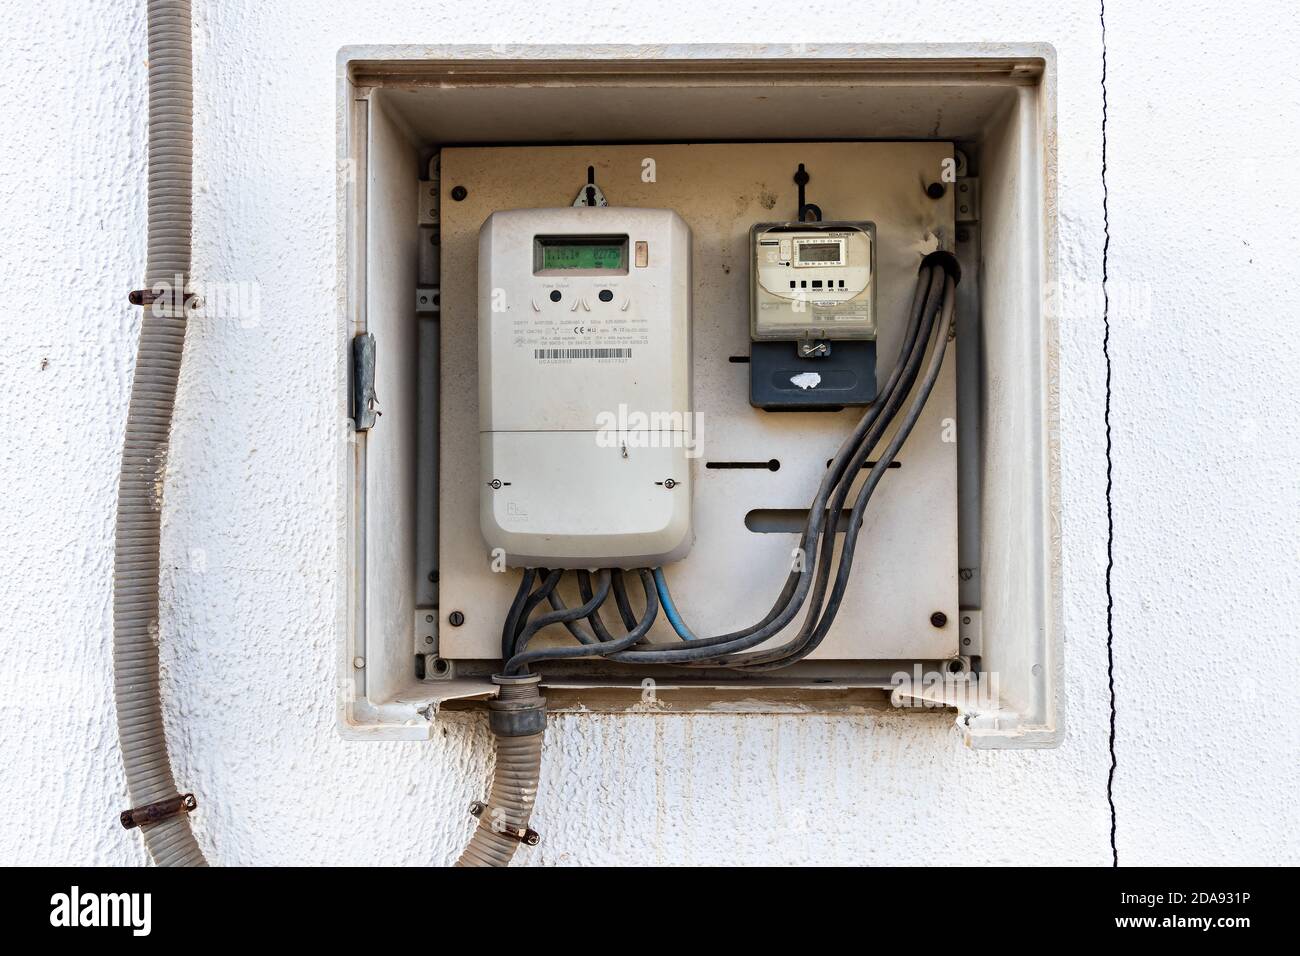 Huelva, Spagna - 7 novembre 2020: Un misuratore di potenza elettrica intelligente della società Endesa, che misura il consumo di energia Foto Stock